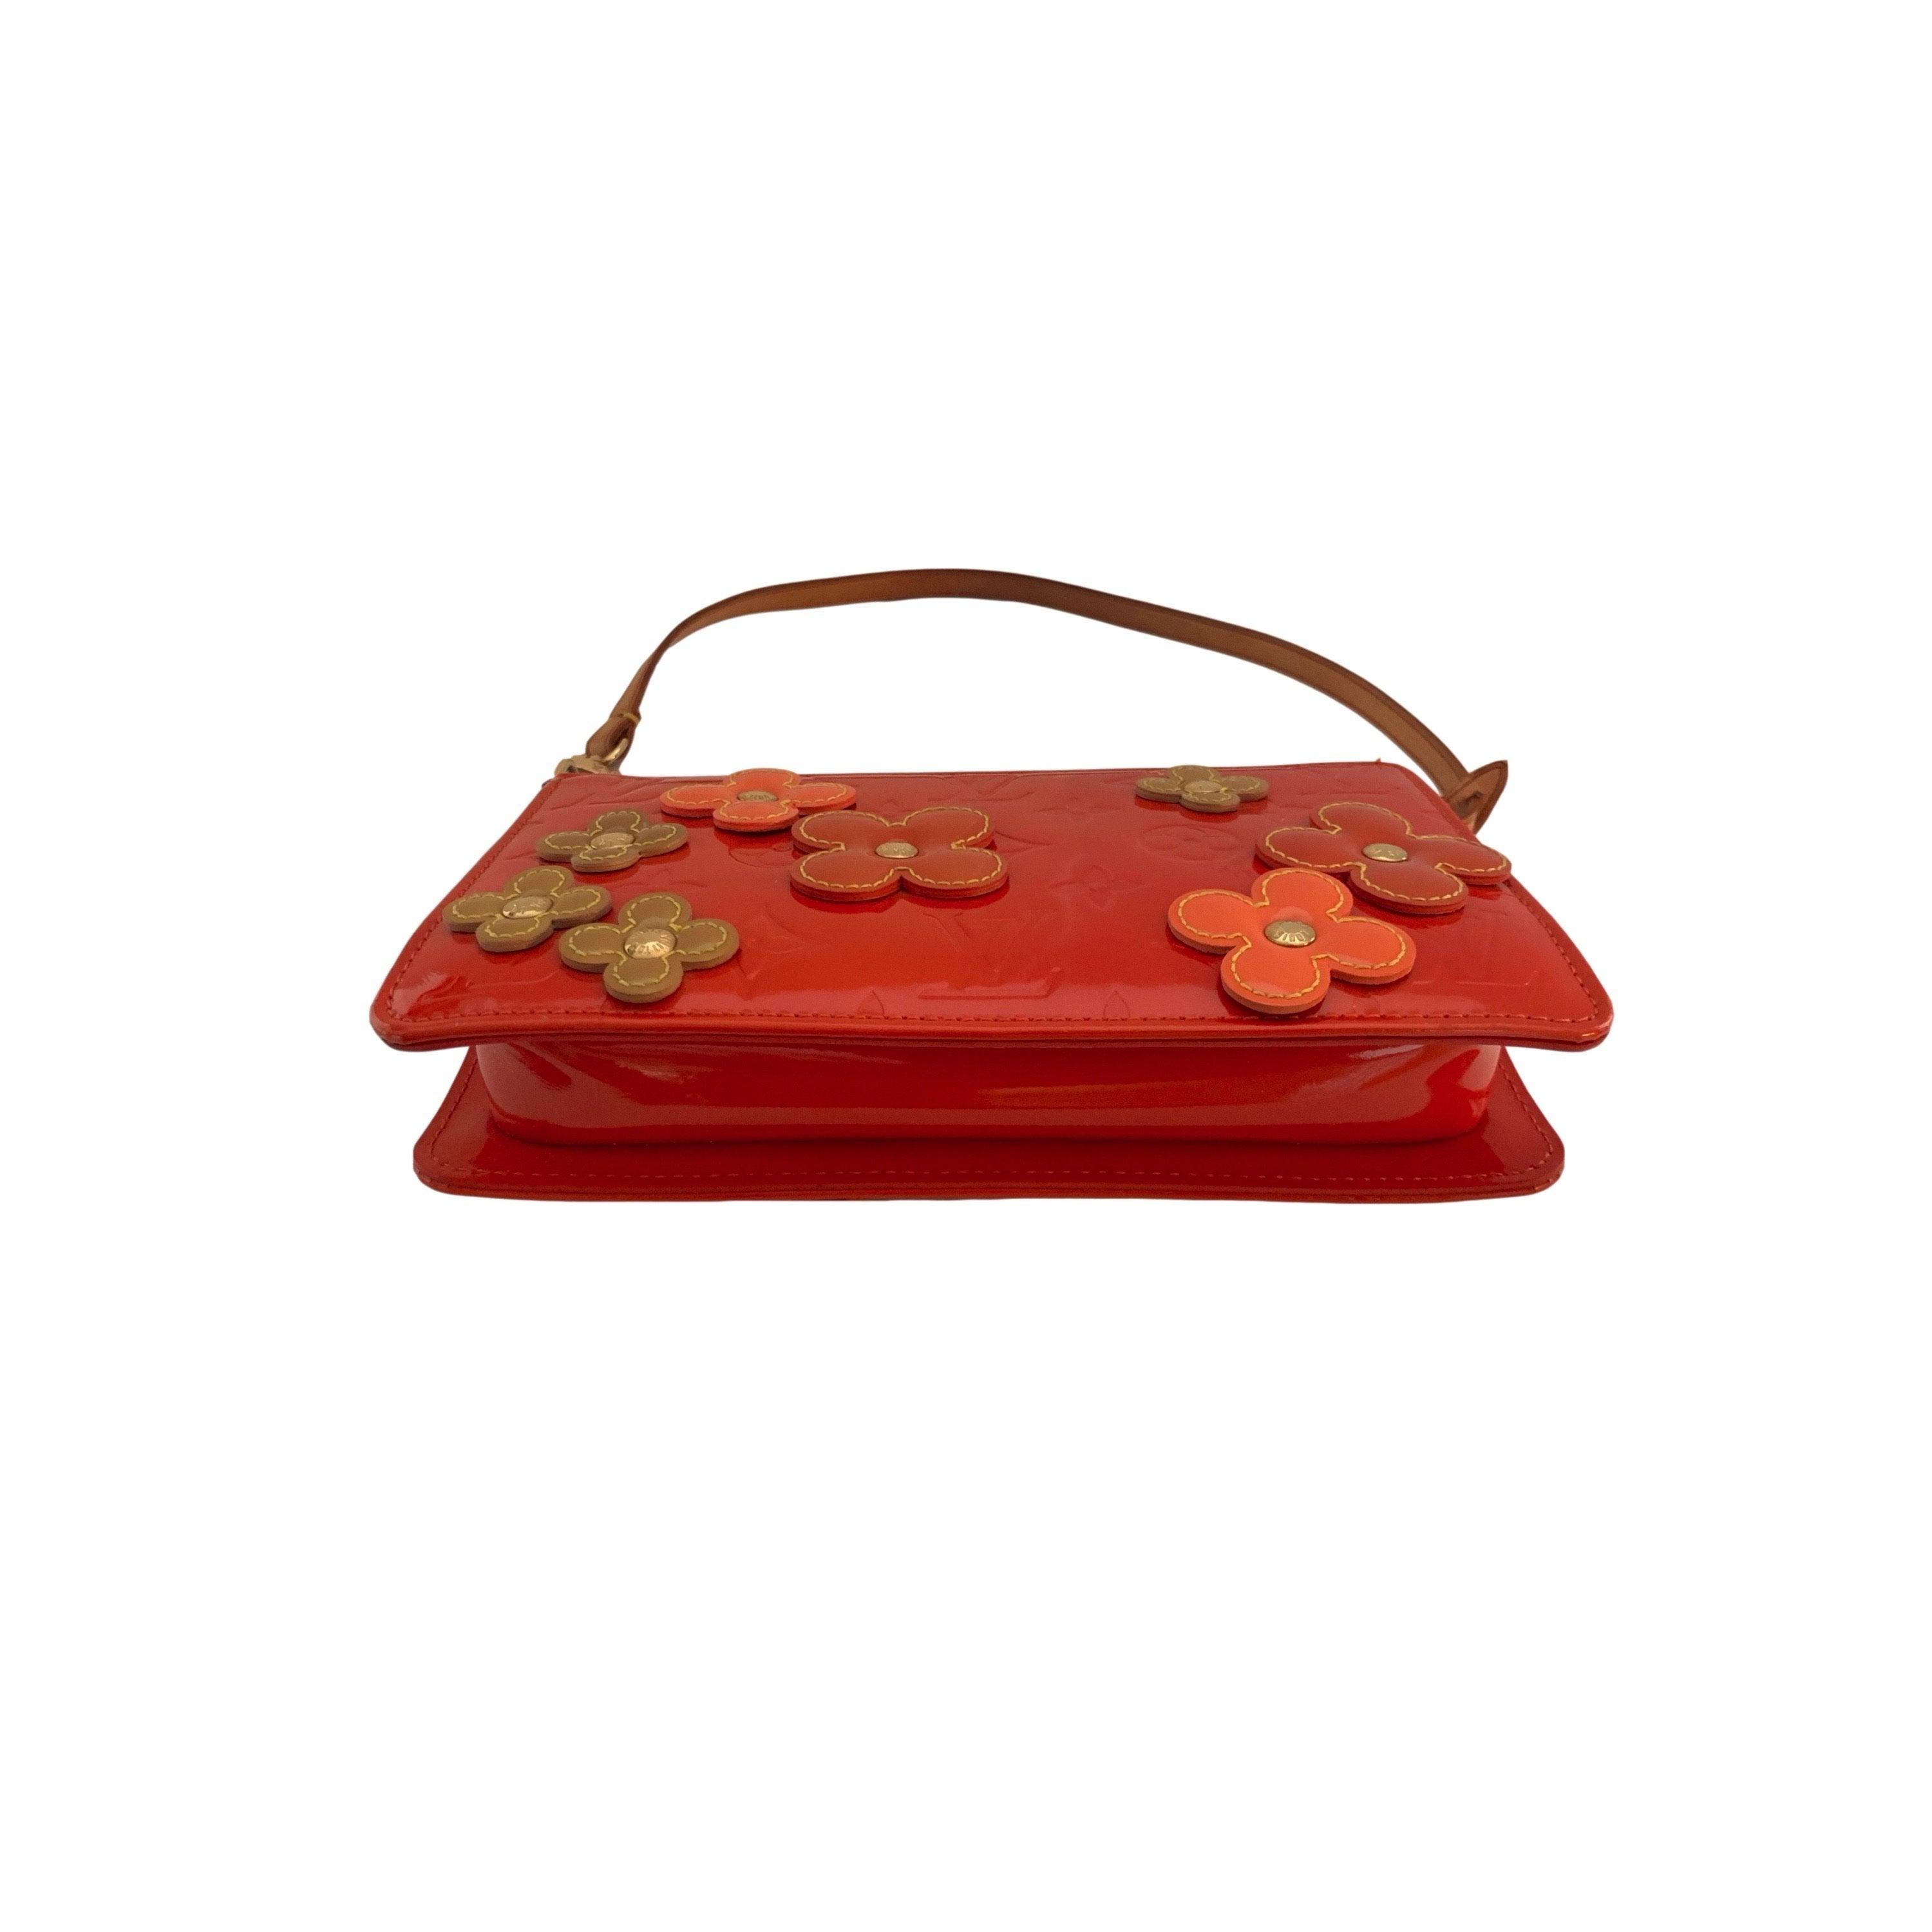 Treasures of NYC - Louis Vuitton Orange Floral Shoulder Bag